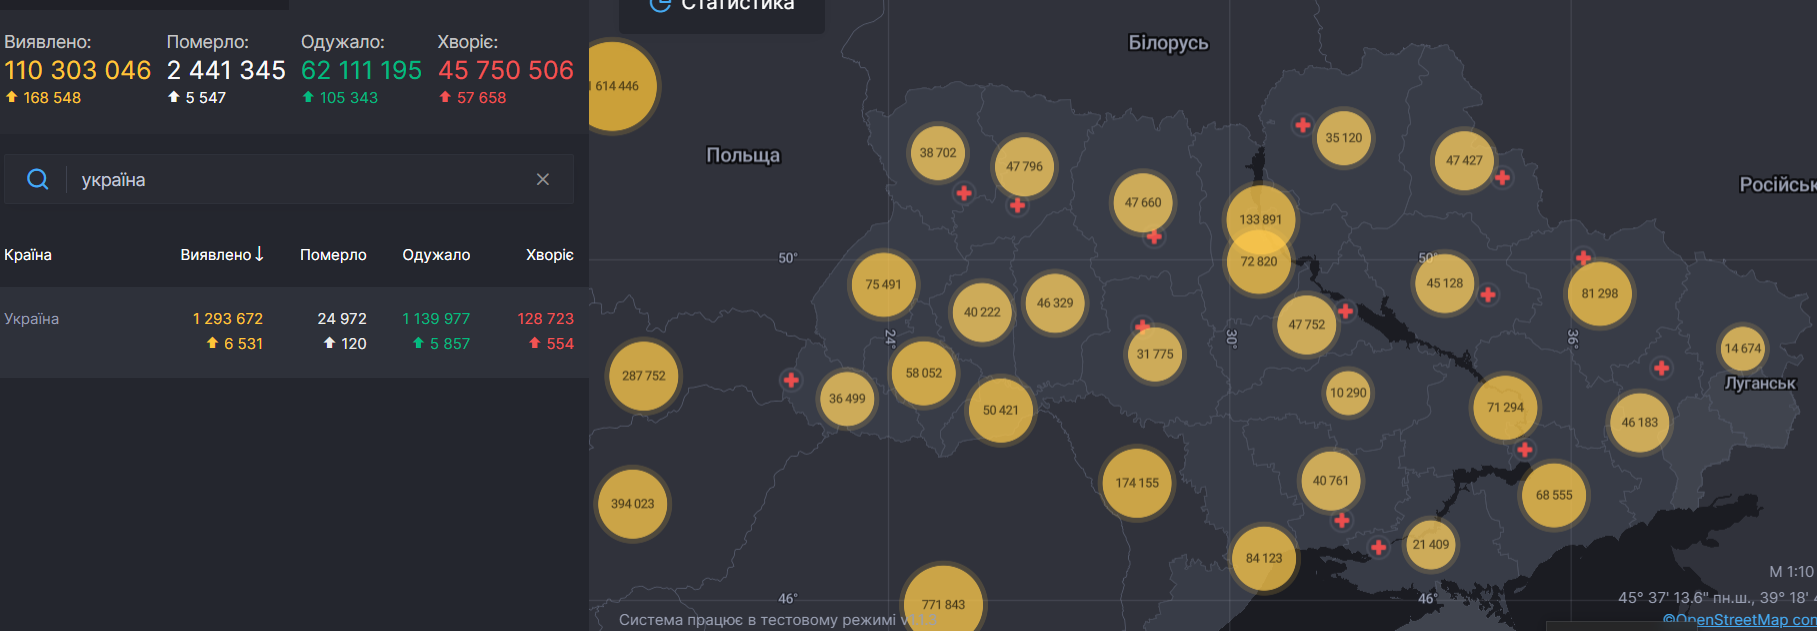 В Украине растет количество больных коронавирусом